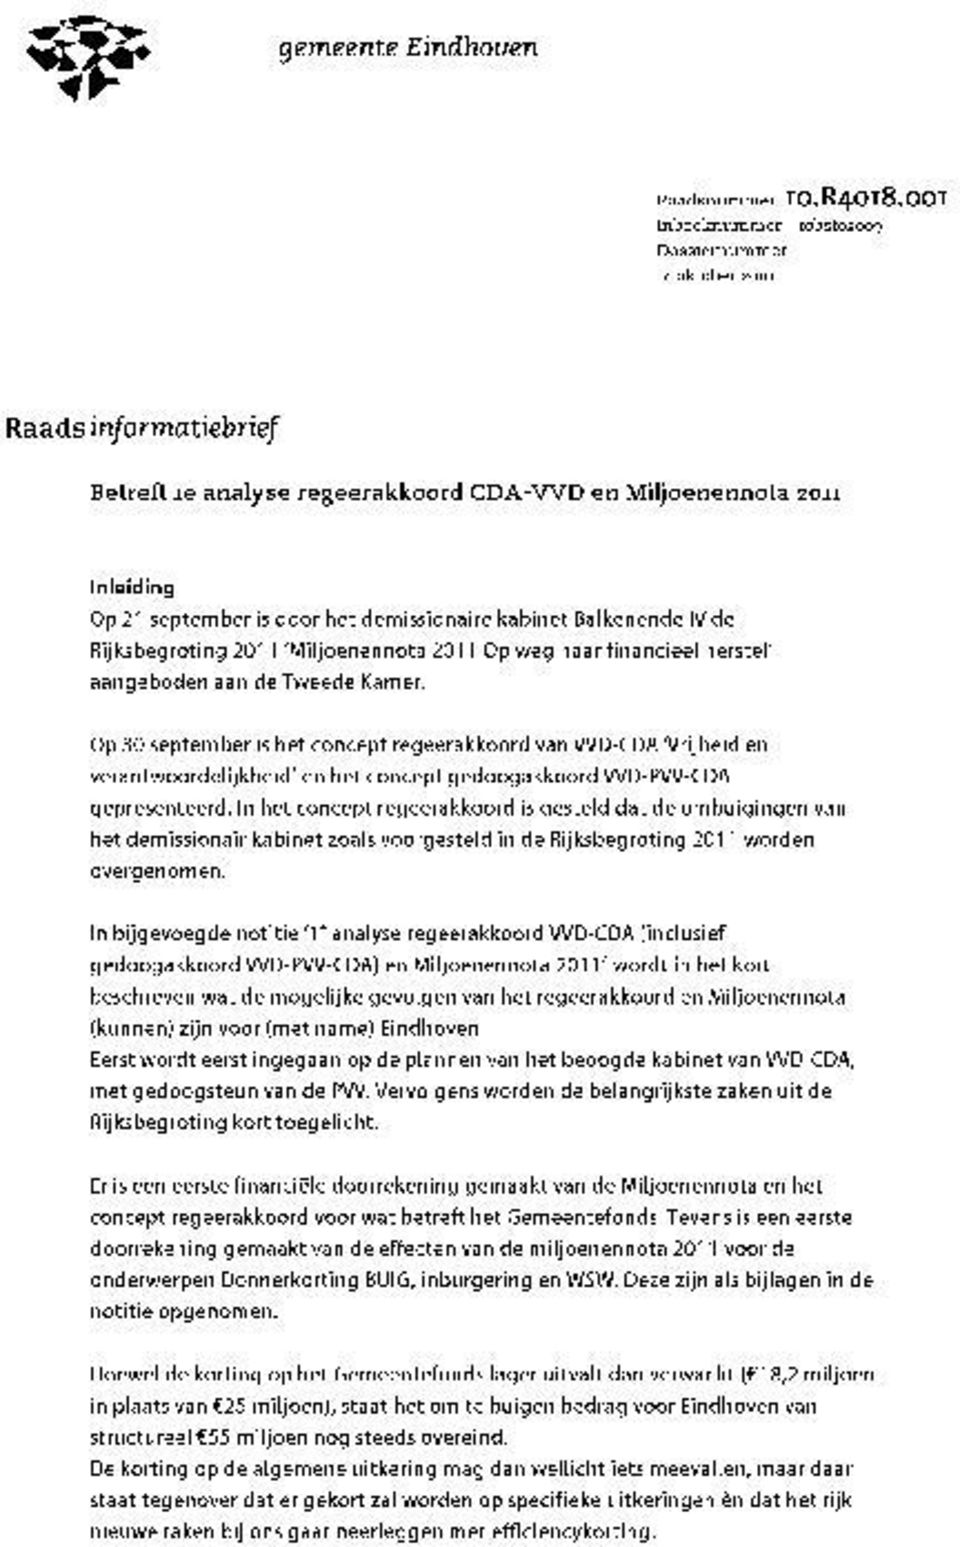 kabinet Balkenende IV de Rijksbegroting 2011 Miljoenennota 2011 Op weg naar financieel herstel aangeboden aan de Tweede Kamer.